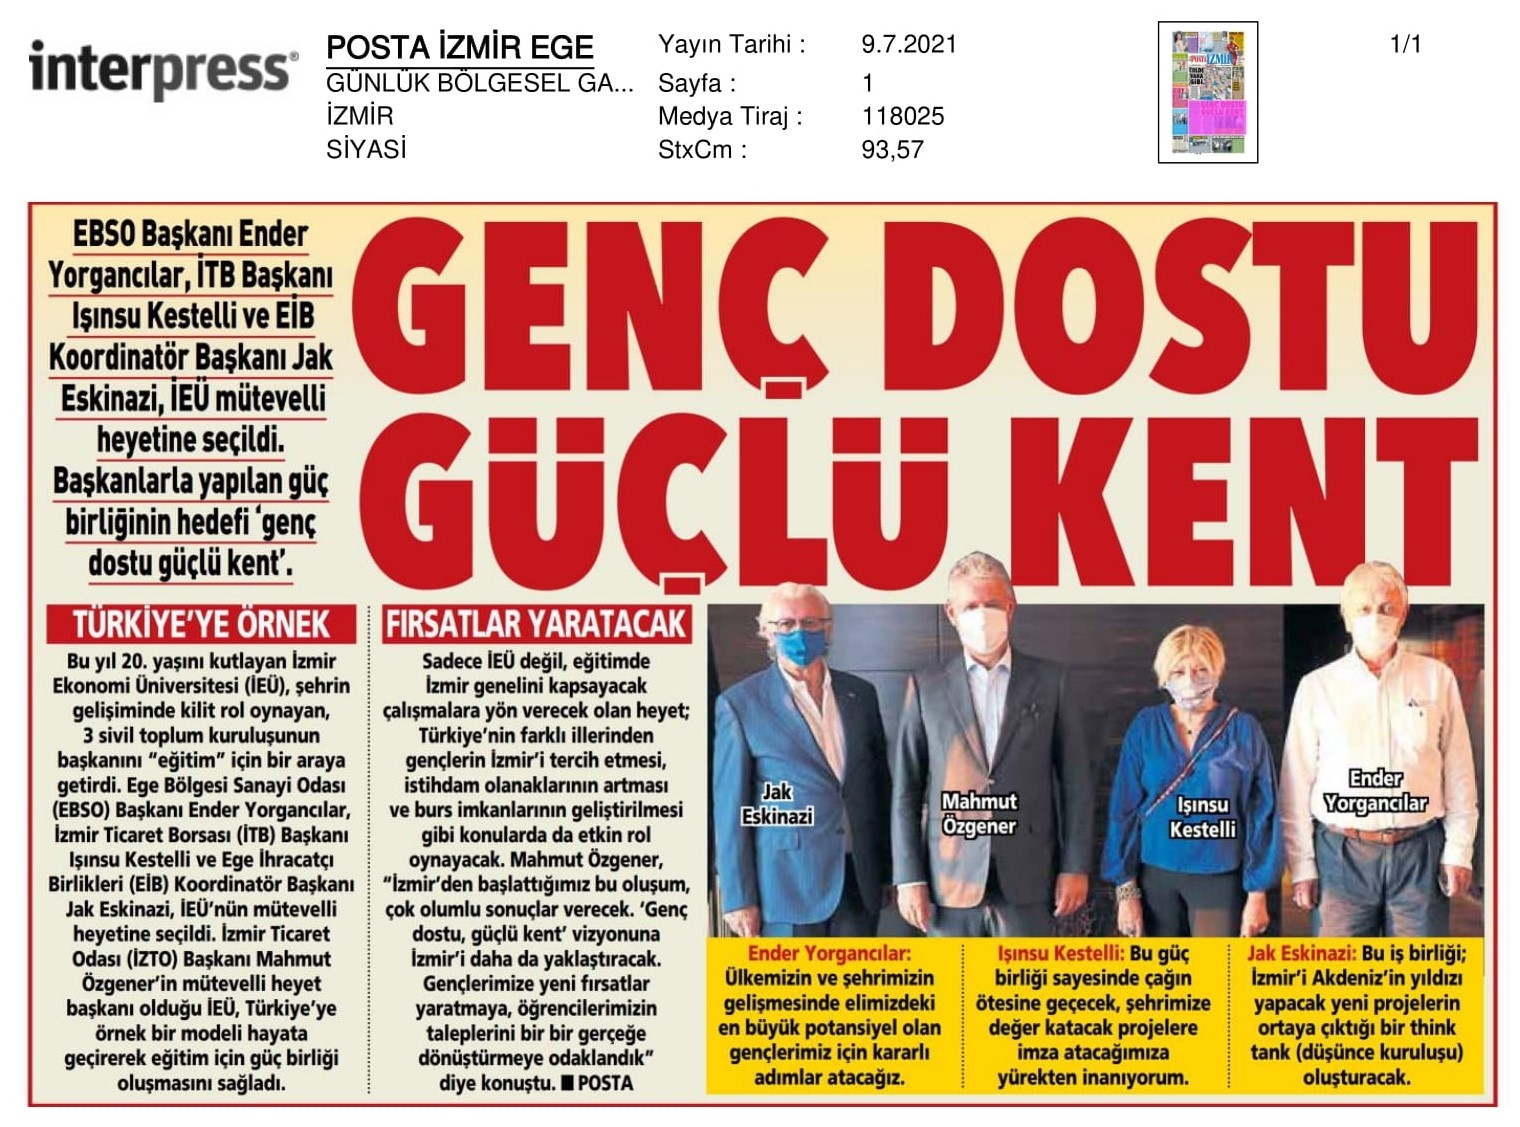 İzmir Ekonomi’de ‘başkanlarla’ güç birliği